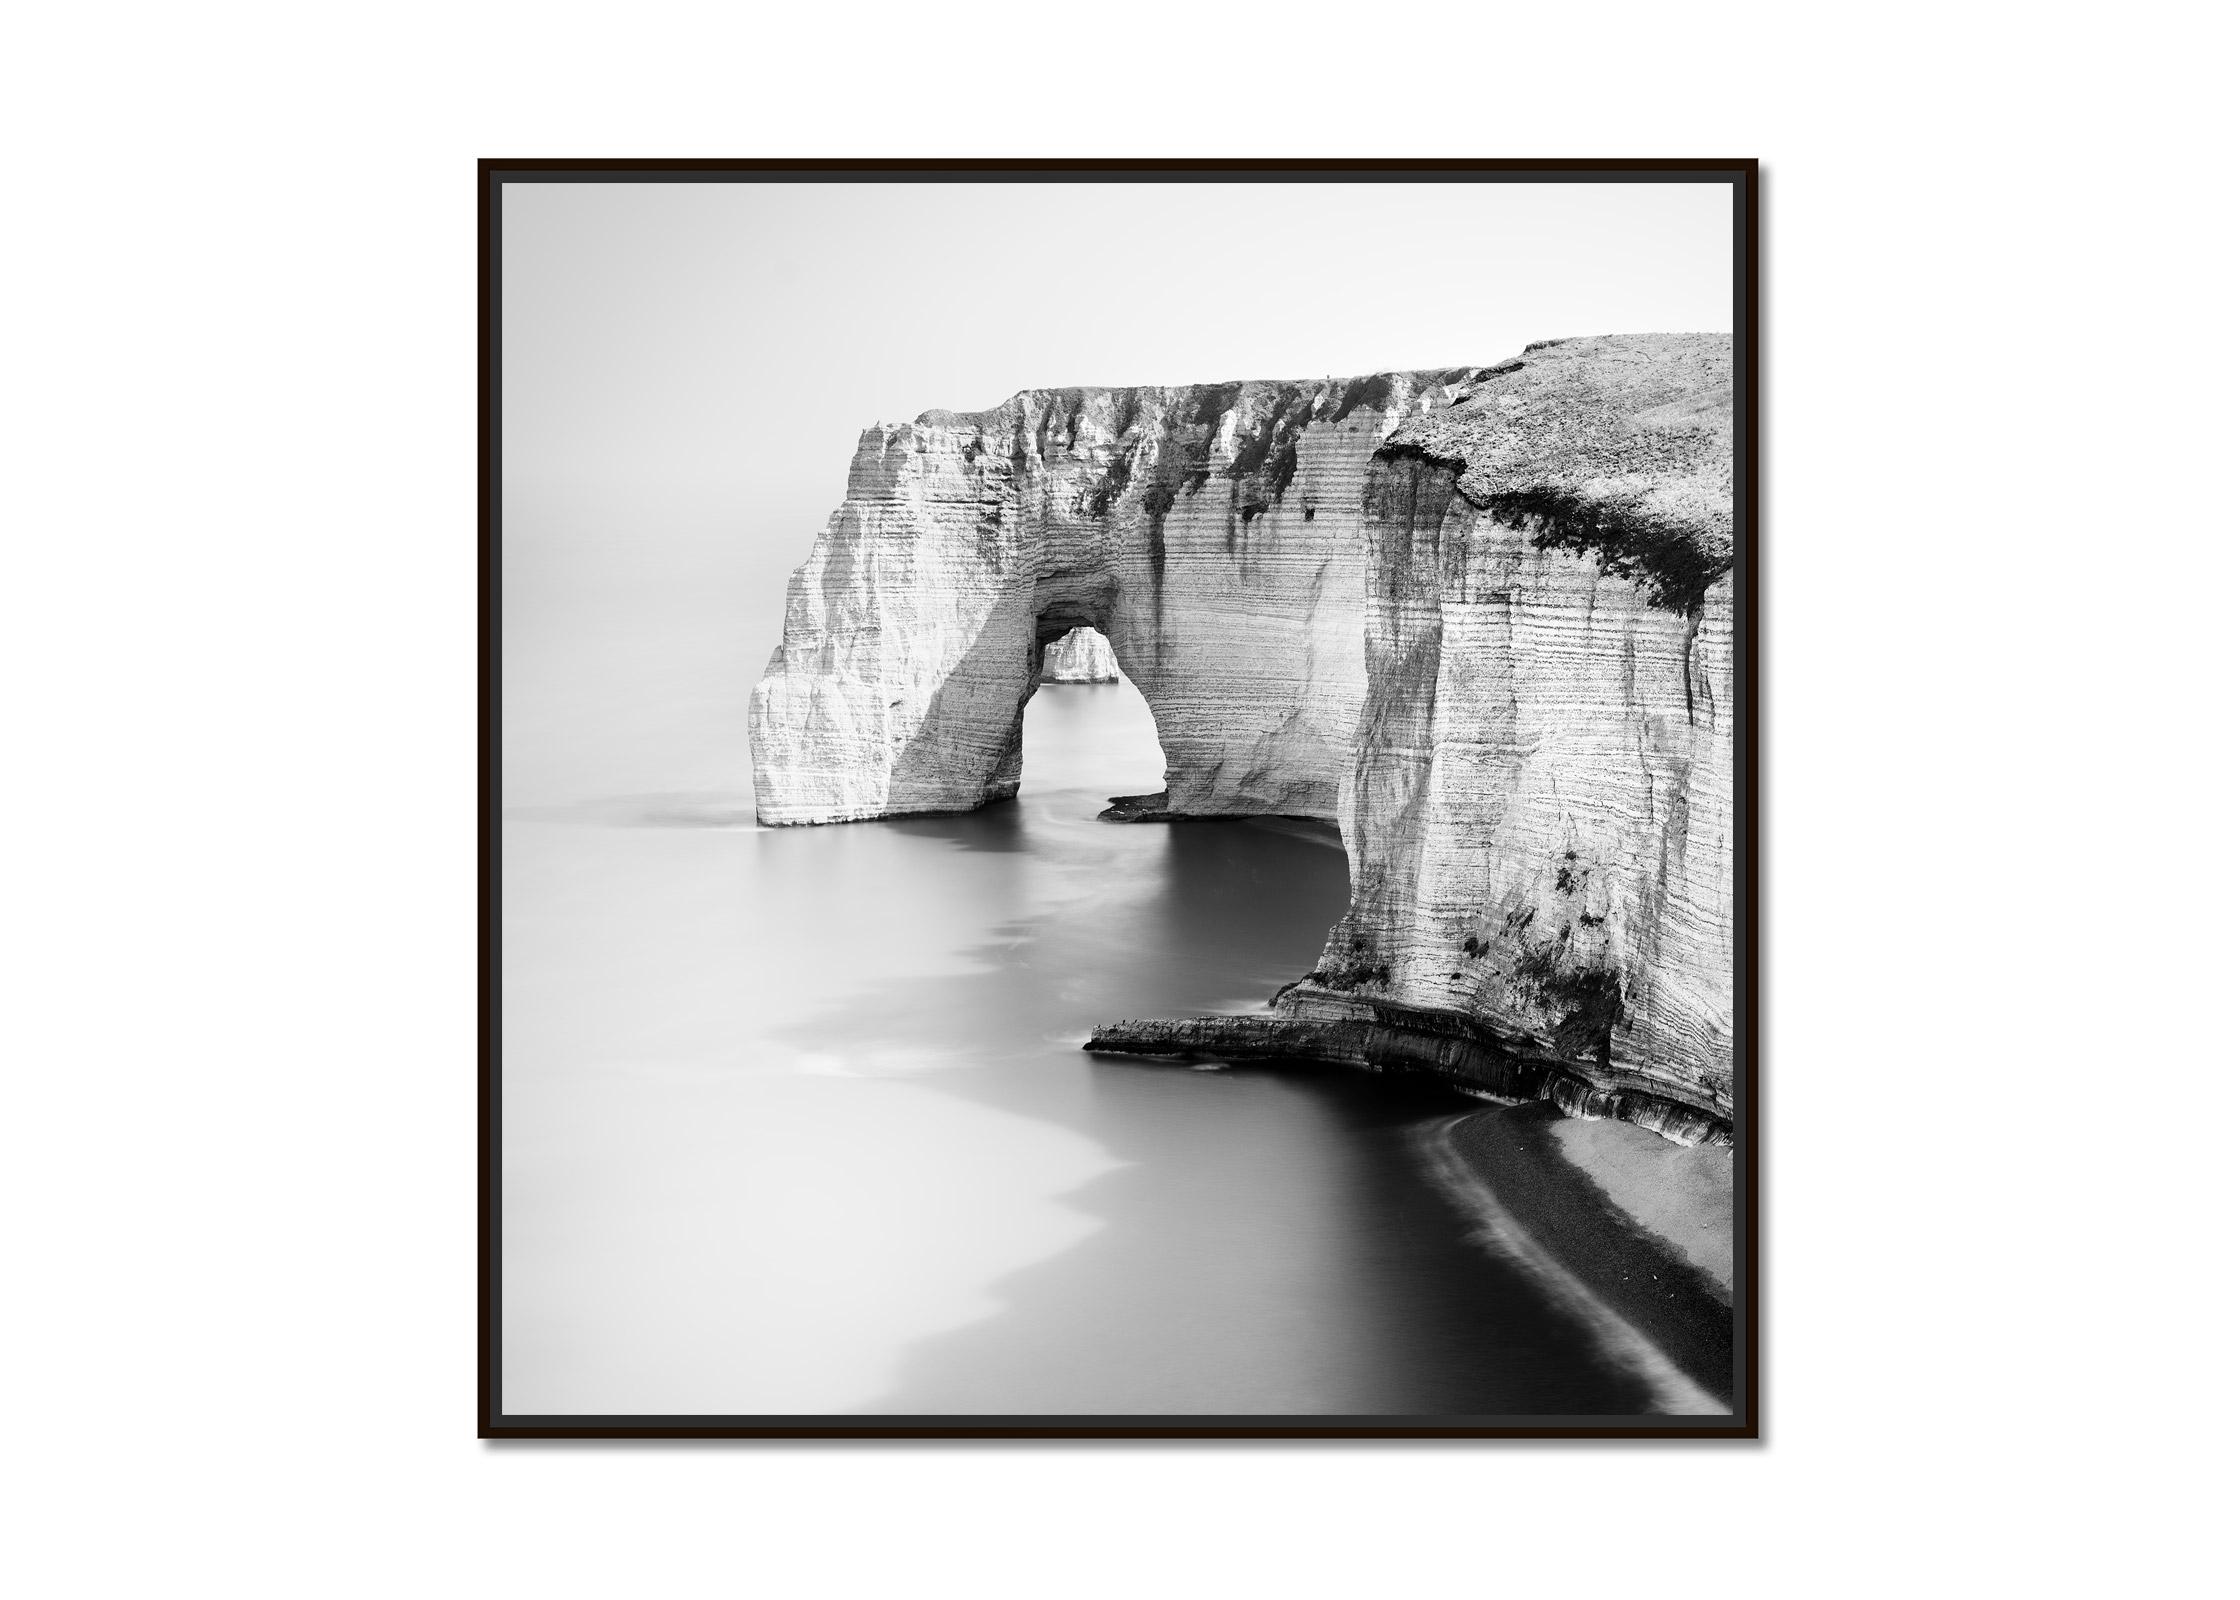 Alabasterküste, Etretat, Frankreich, Langzeitbelichtung, Landschaftsfotografie der bildenden Kunst – Print von Gerald Berghammer